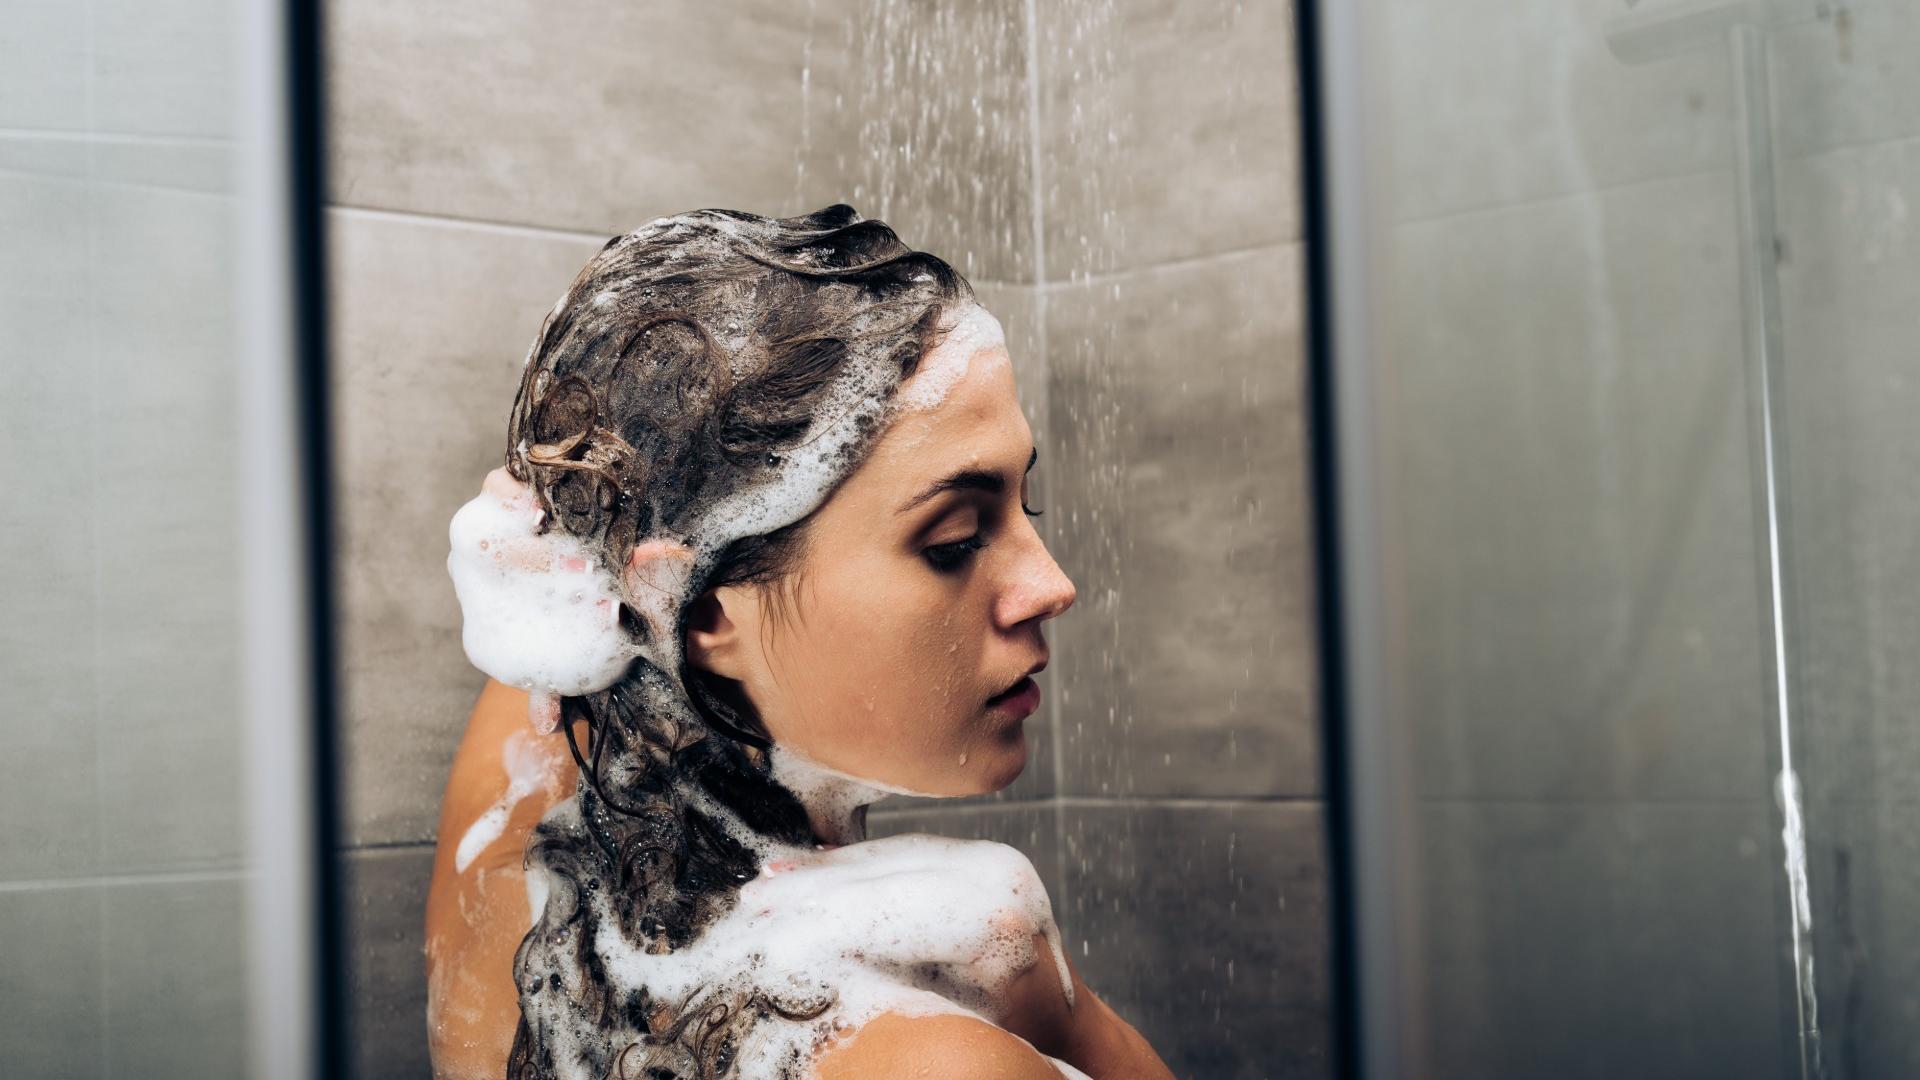 Fest oder flüssig: Die Auswahl an Shampoos ist groß. „Stiftung Warentest“ hat 18 Produkte jetzt getestet.